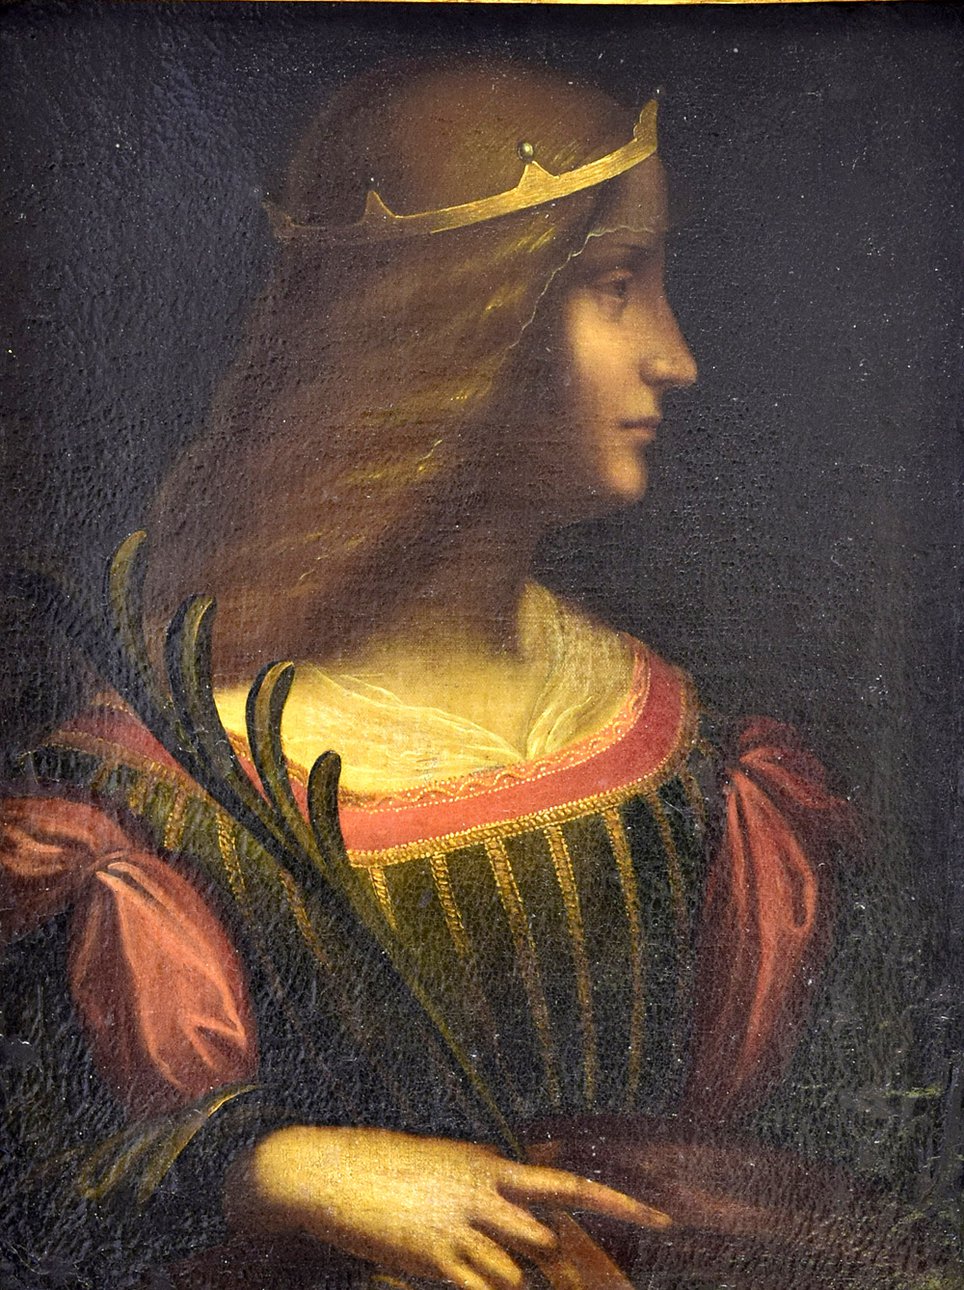 Леонардо да Винчи (?). «Портрет Изабеллы д’Эсте». Фото: Louvre Museum